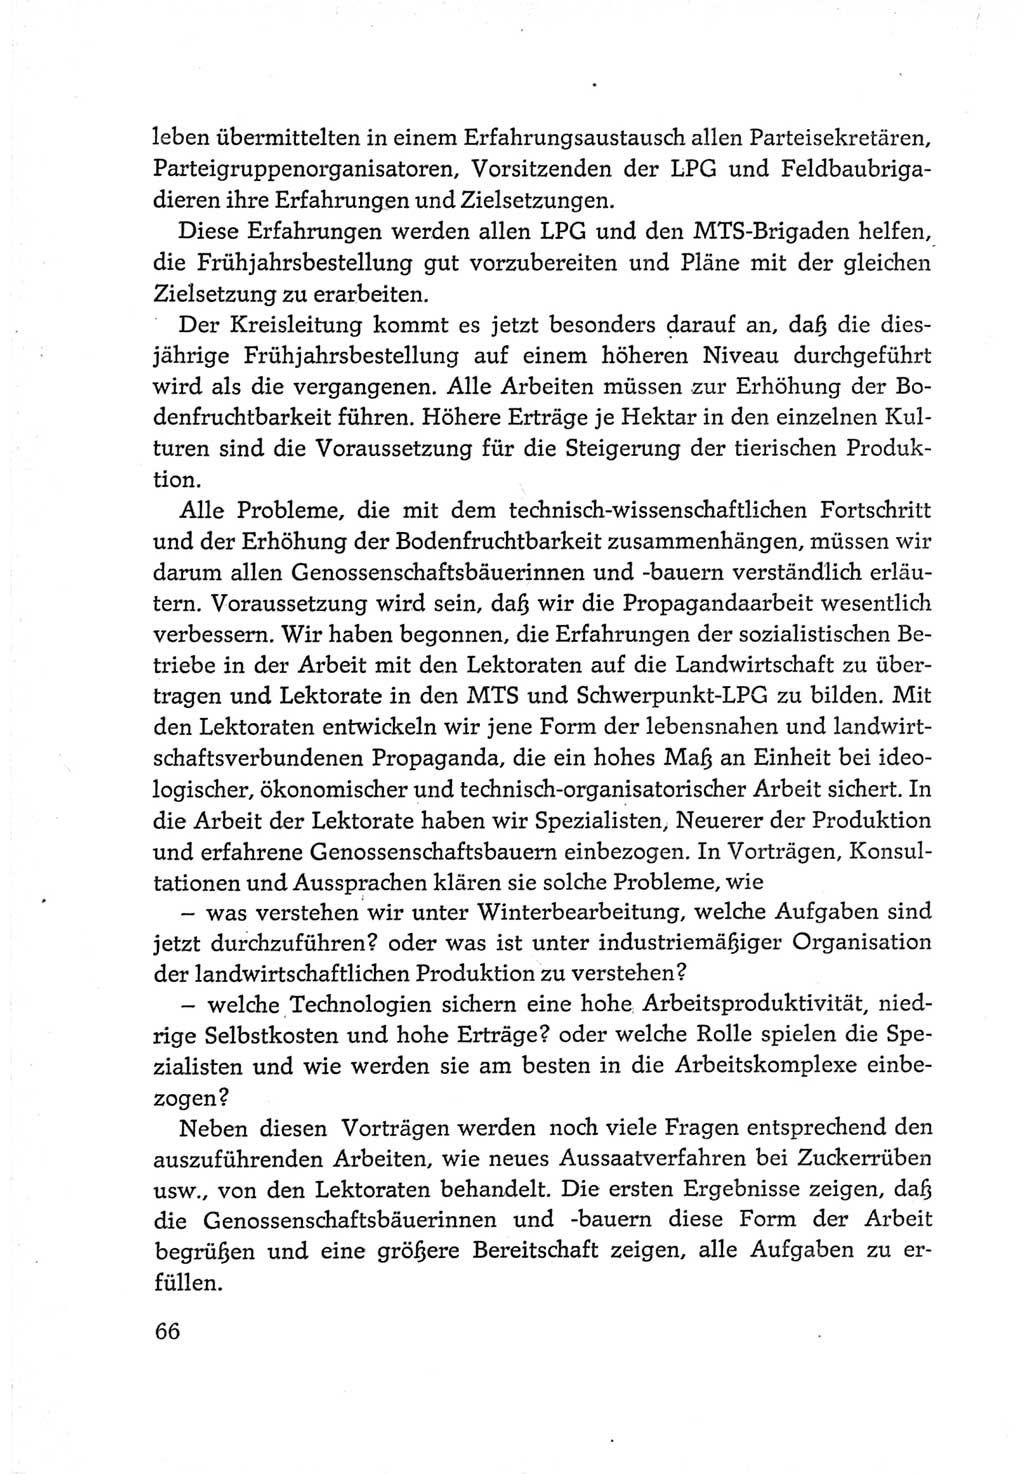 Protokoll der Verhandlungen des Ⅵ. Parteitages der Sozialistischen Einheitspartei Deutschlands (SED) [Deutsche Demokratische Republik (DDR)] 1963, Band Ⅲ, Seite 66 (Prot. Verh. Ⅵ. PT SED DDR 1963, Bd. Ⅲ, S. 66)